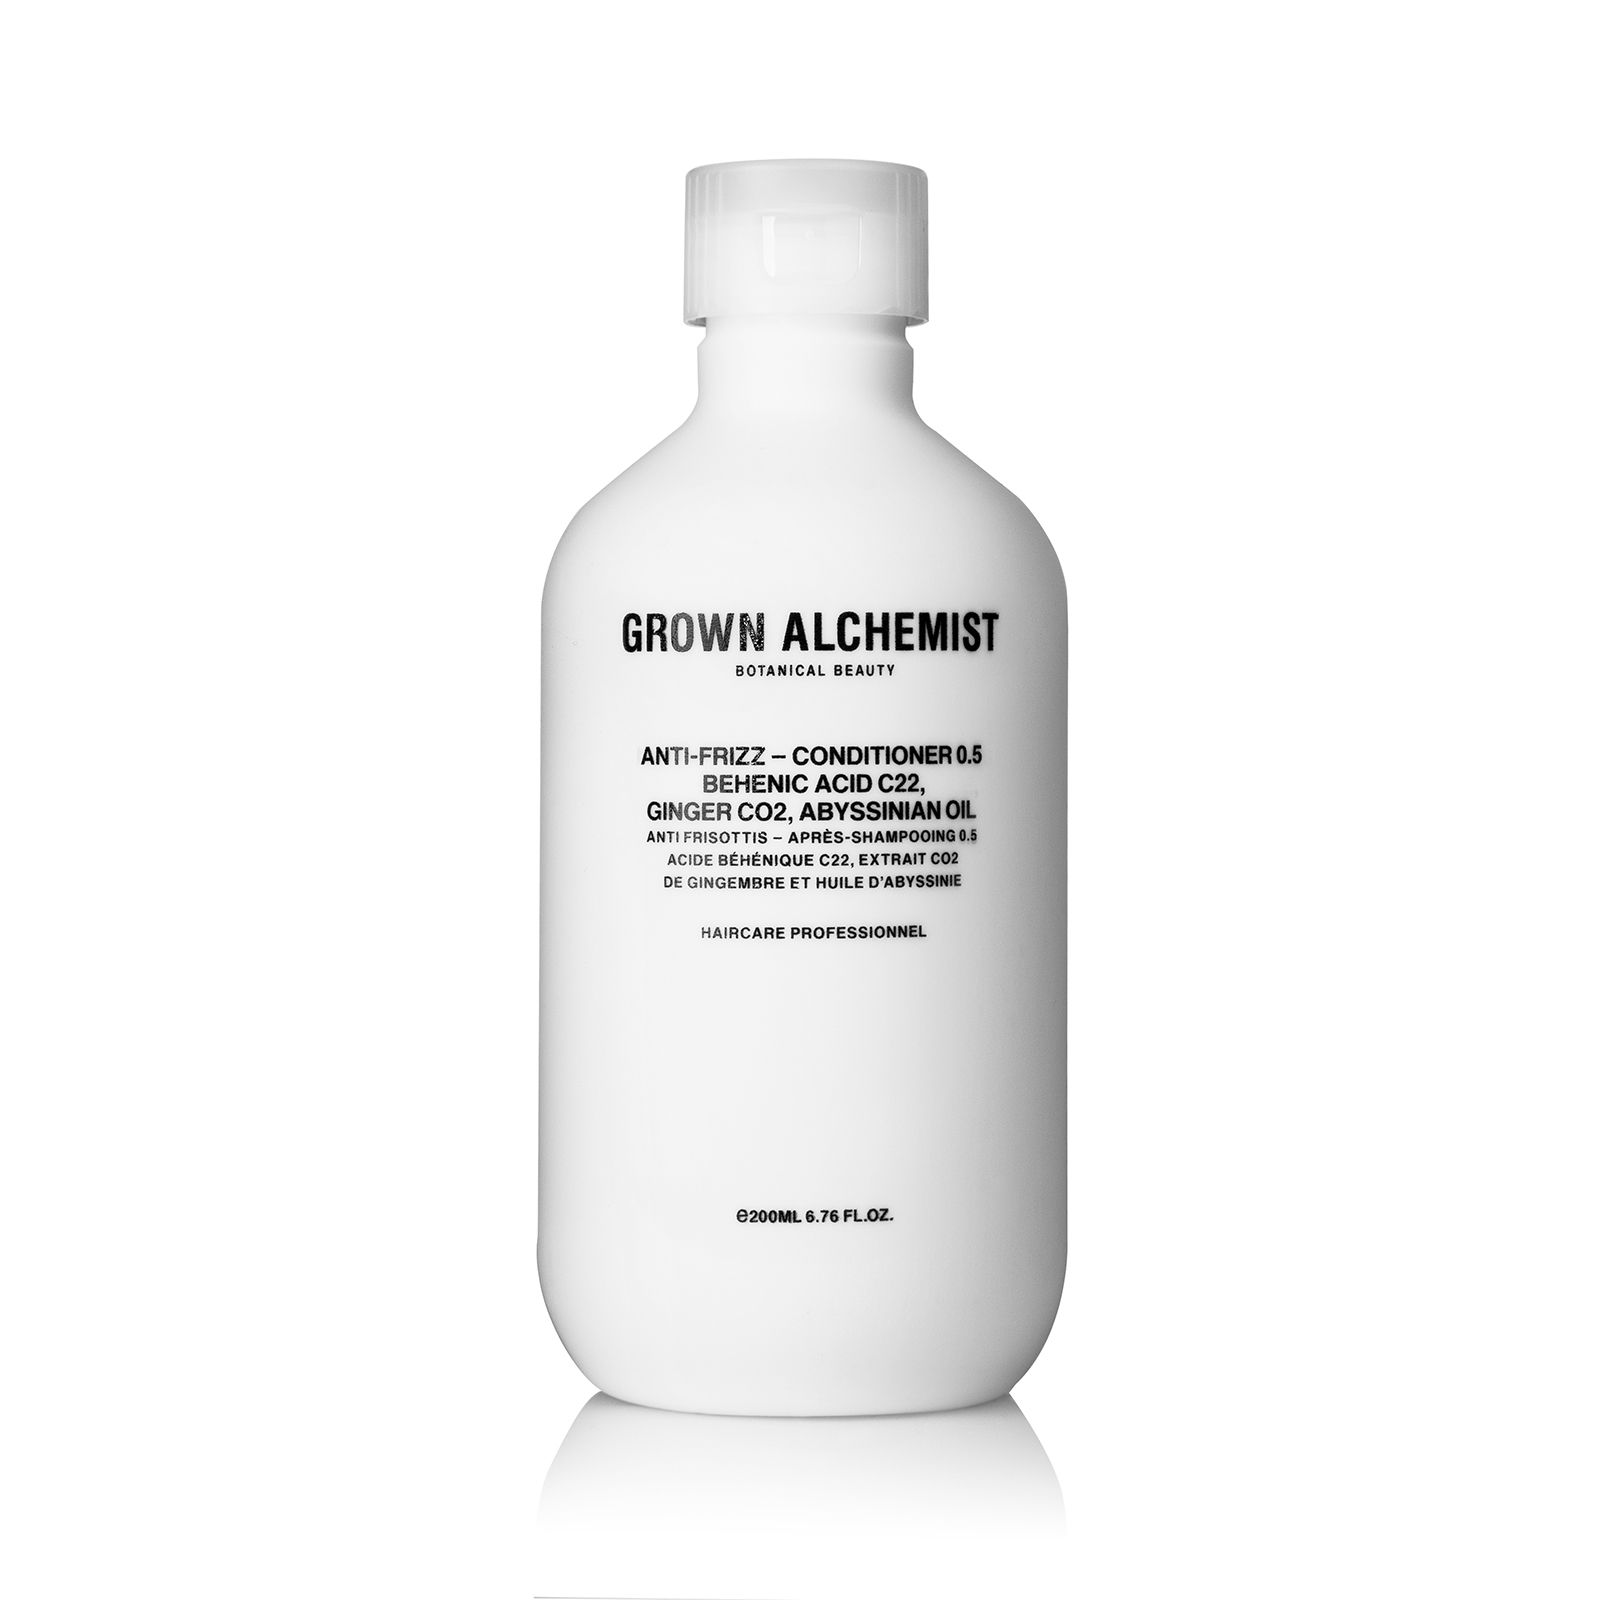 Grown Alchemist Anti-Frizz - Conditioner 0.5 (200 ml)